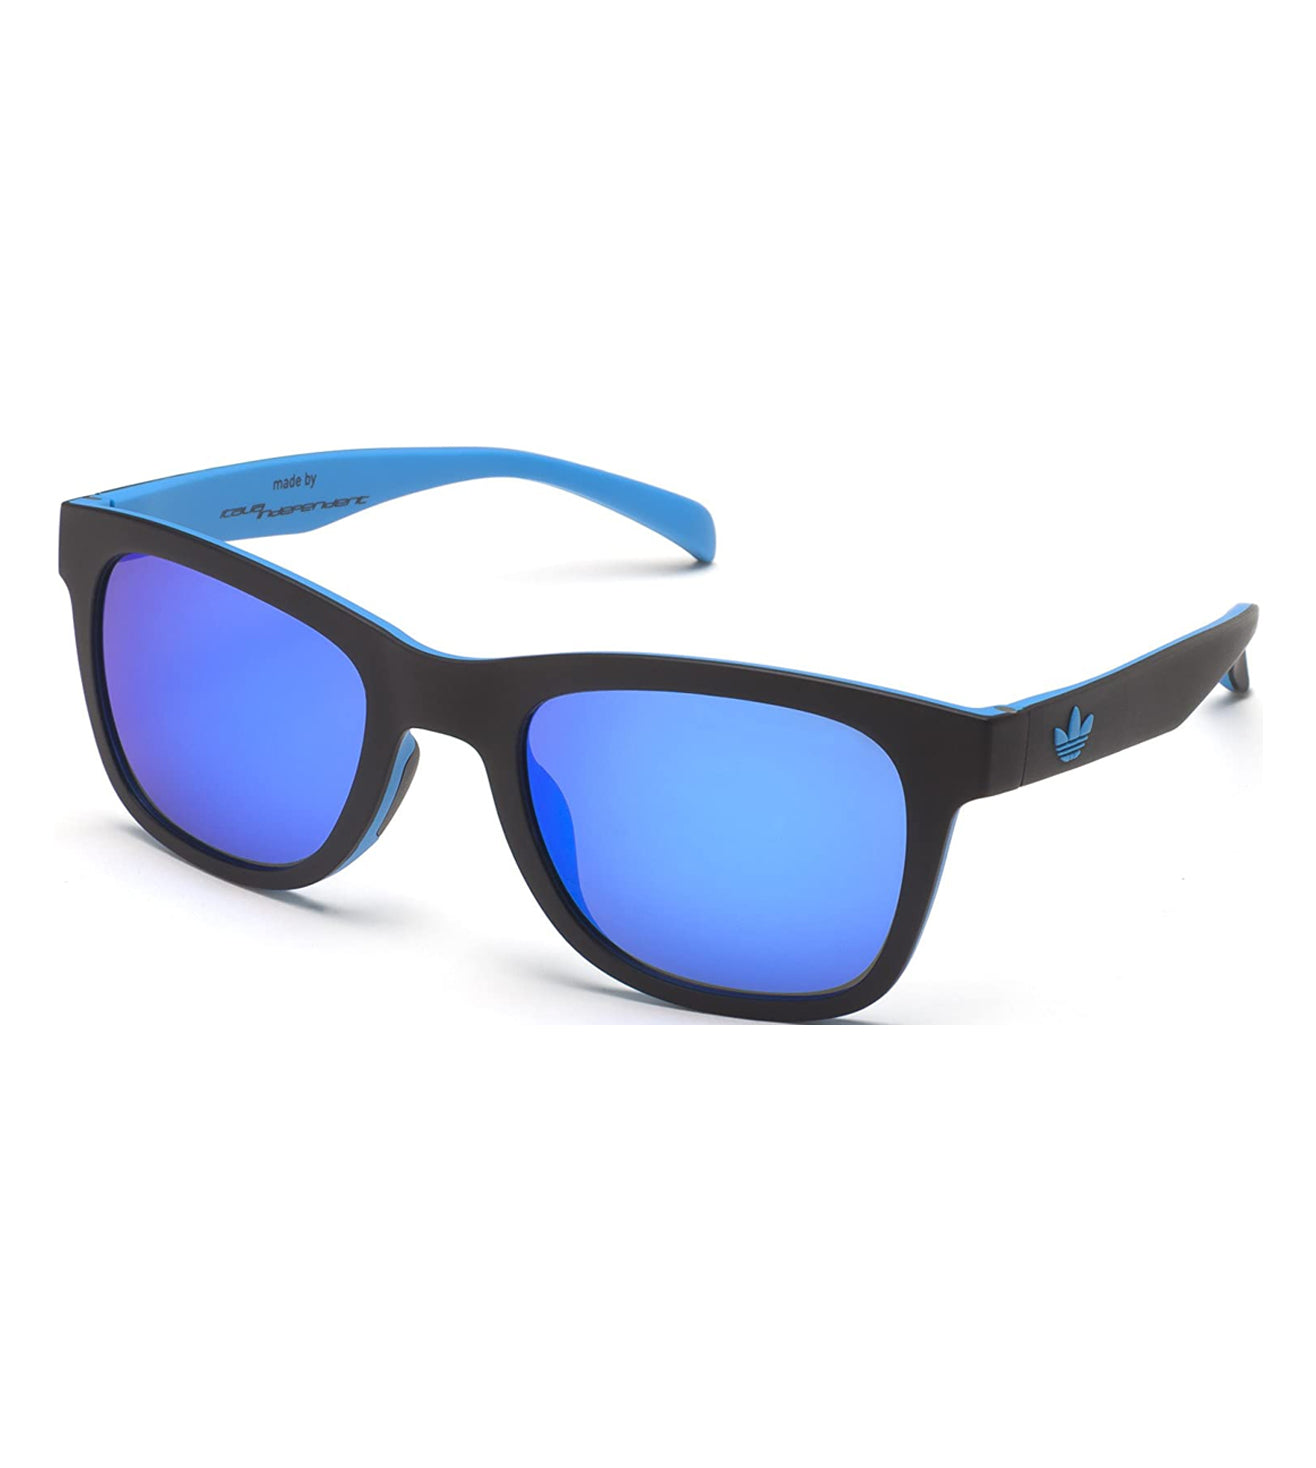 Blue Unisex Square Sunglasses